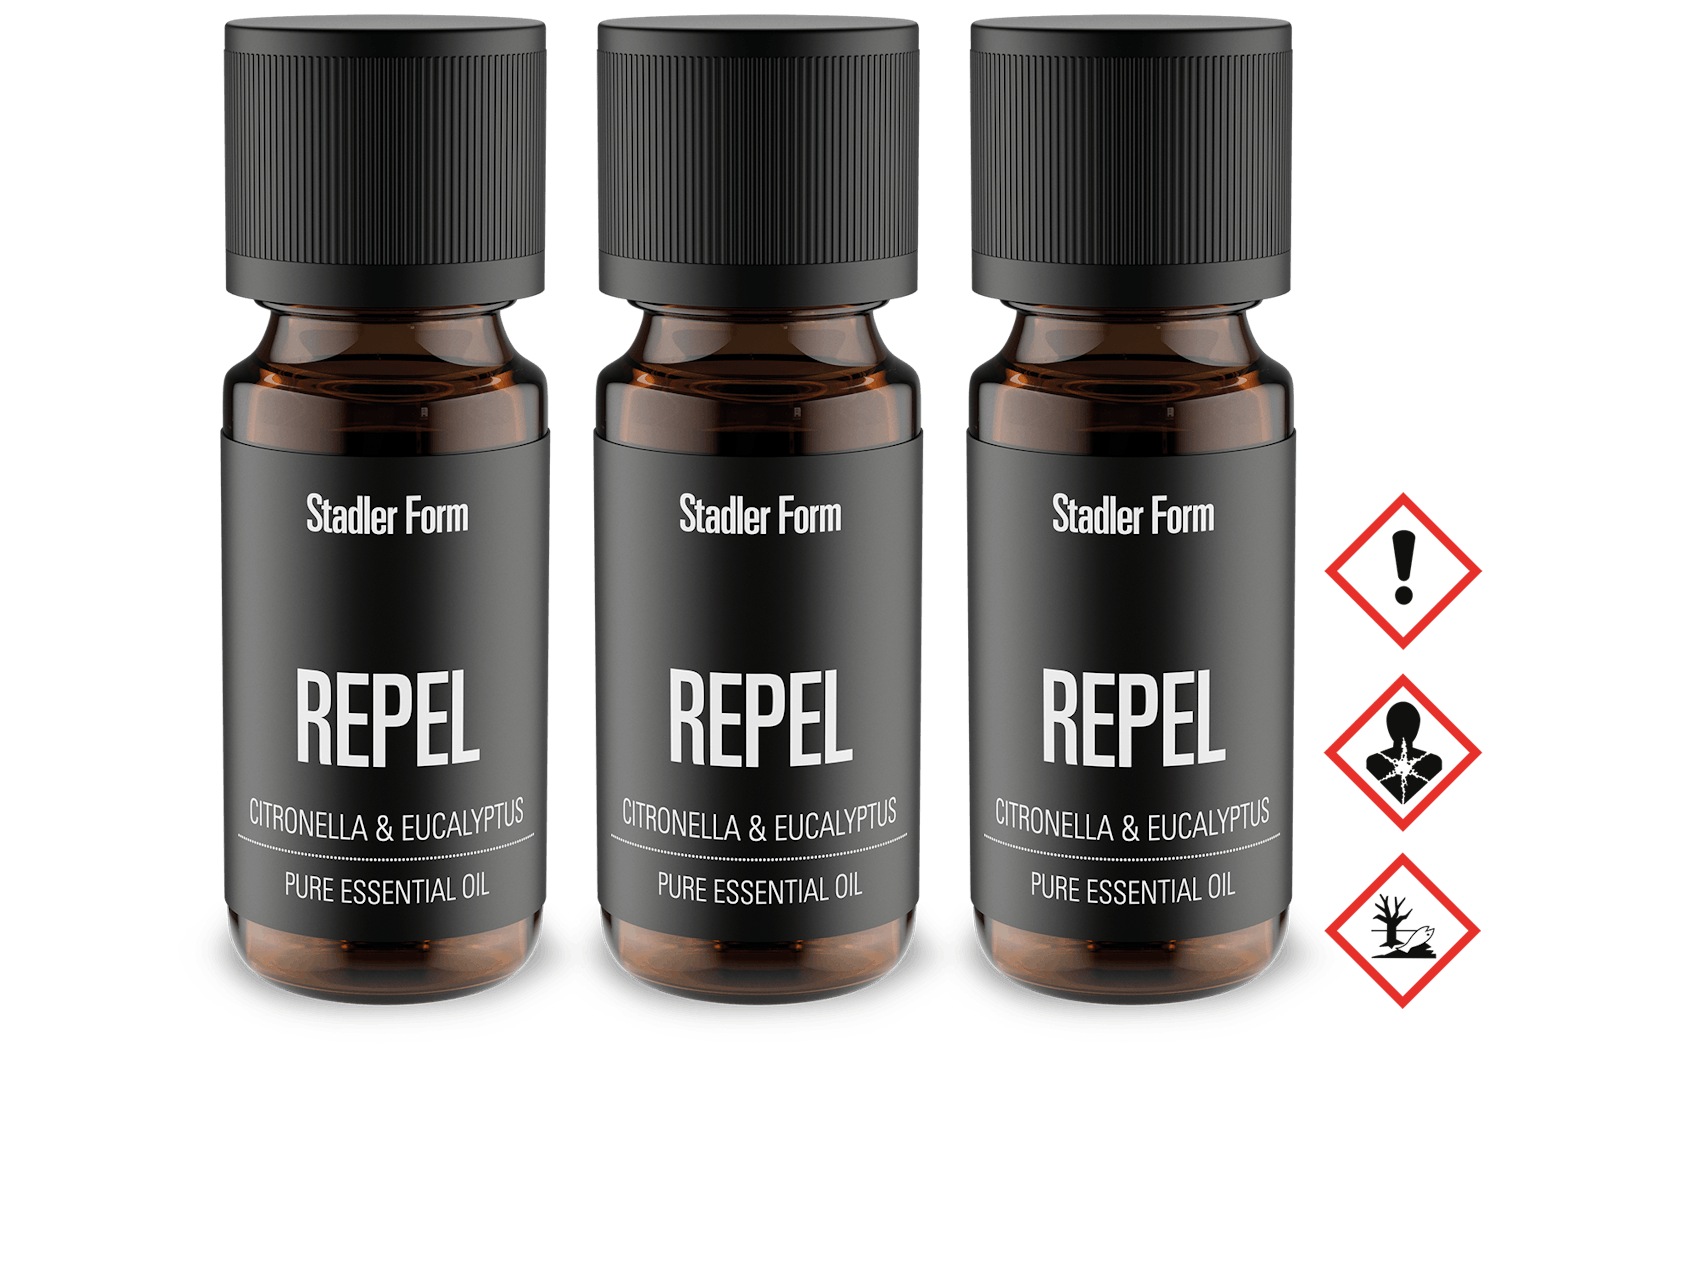 Stadler Form fragrance Repel pack of 3 bottles with waring symbols